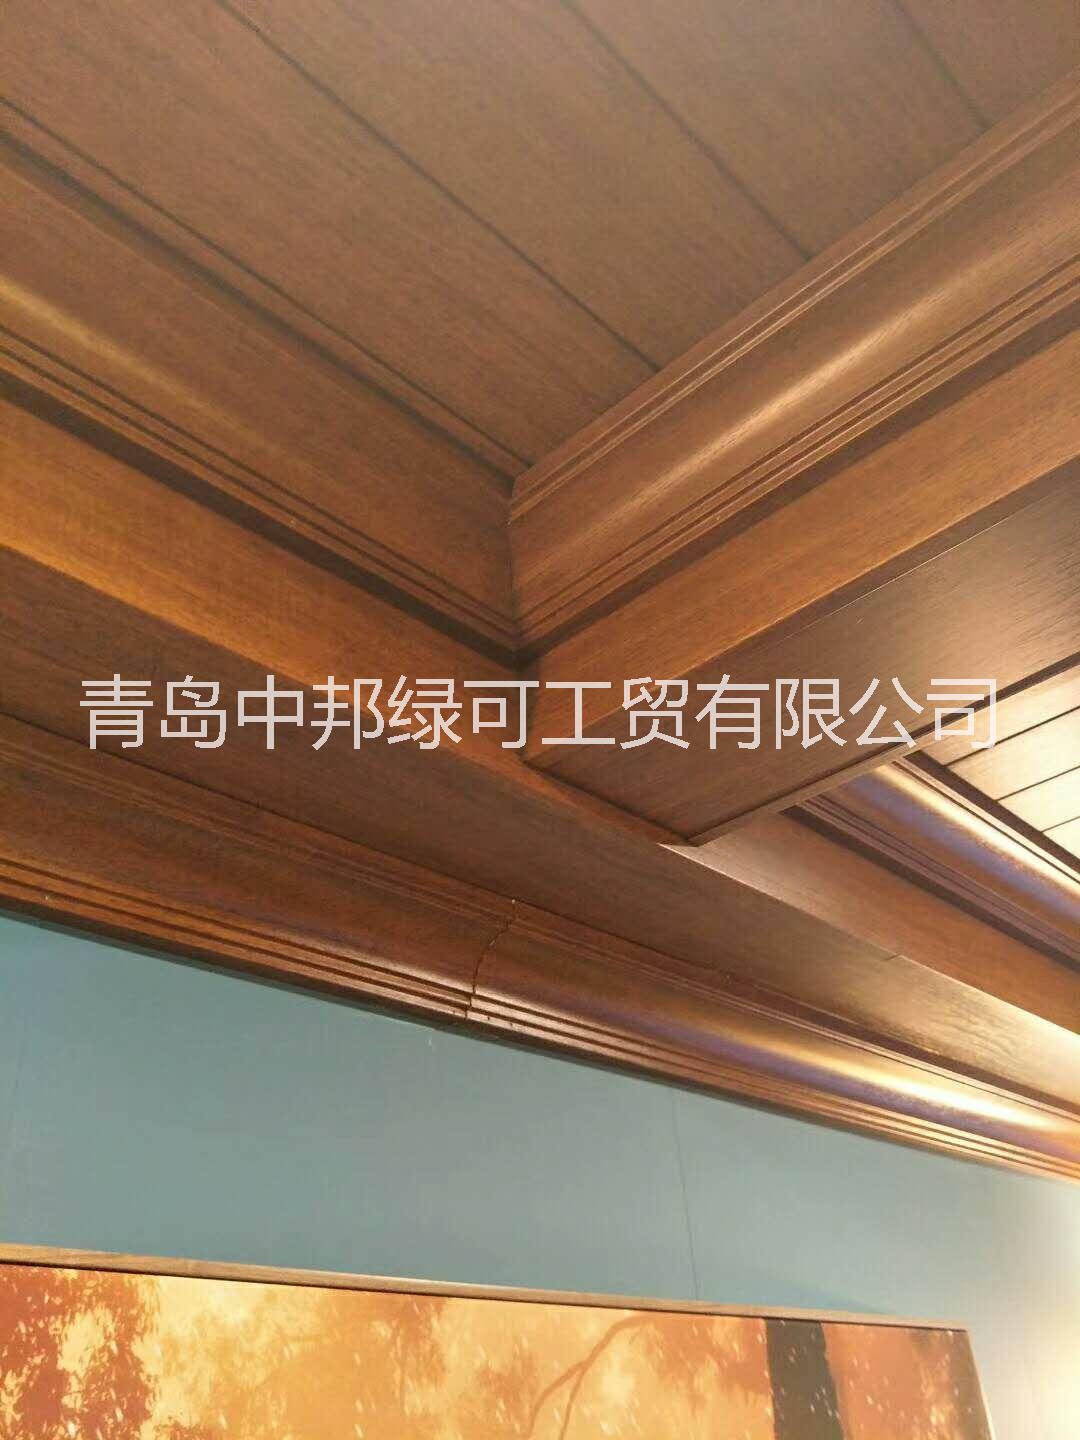 供应青岛生态木厂家制造优质产品 青岛中邦生态木墙板厂家品质优图片